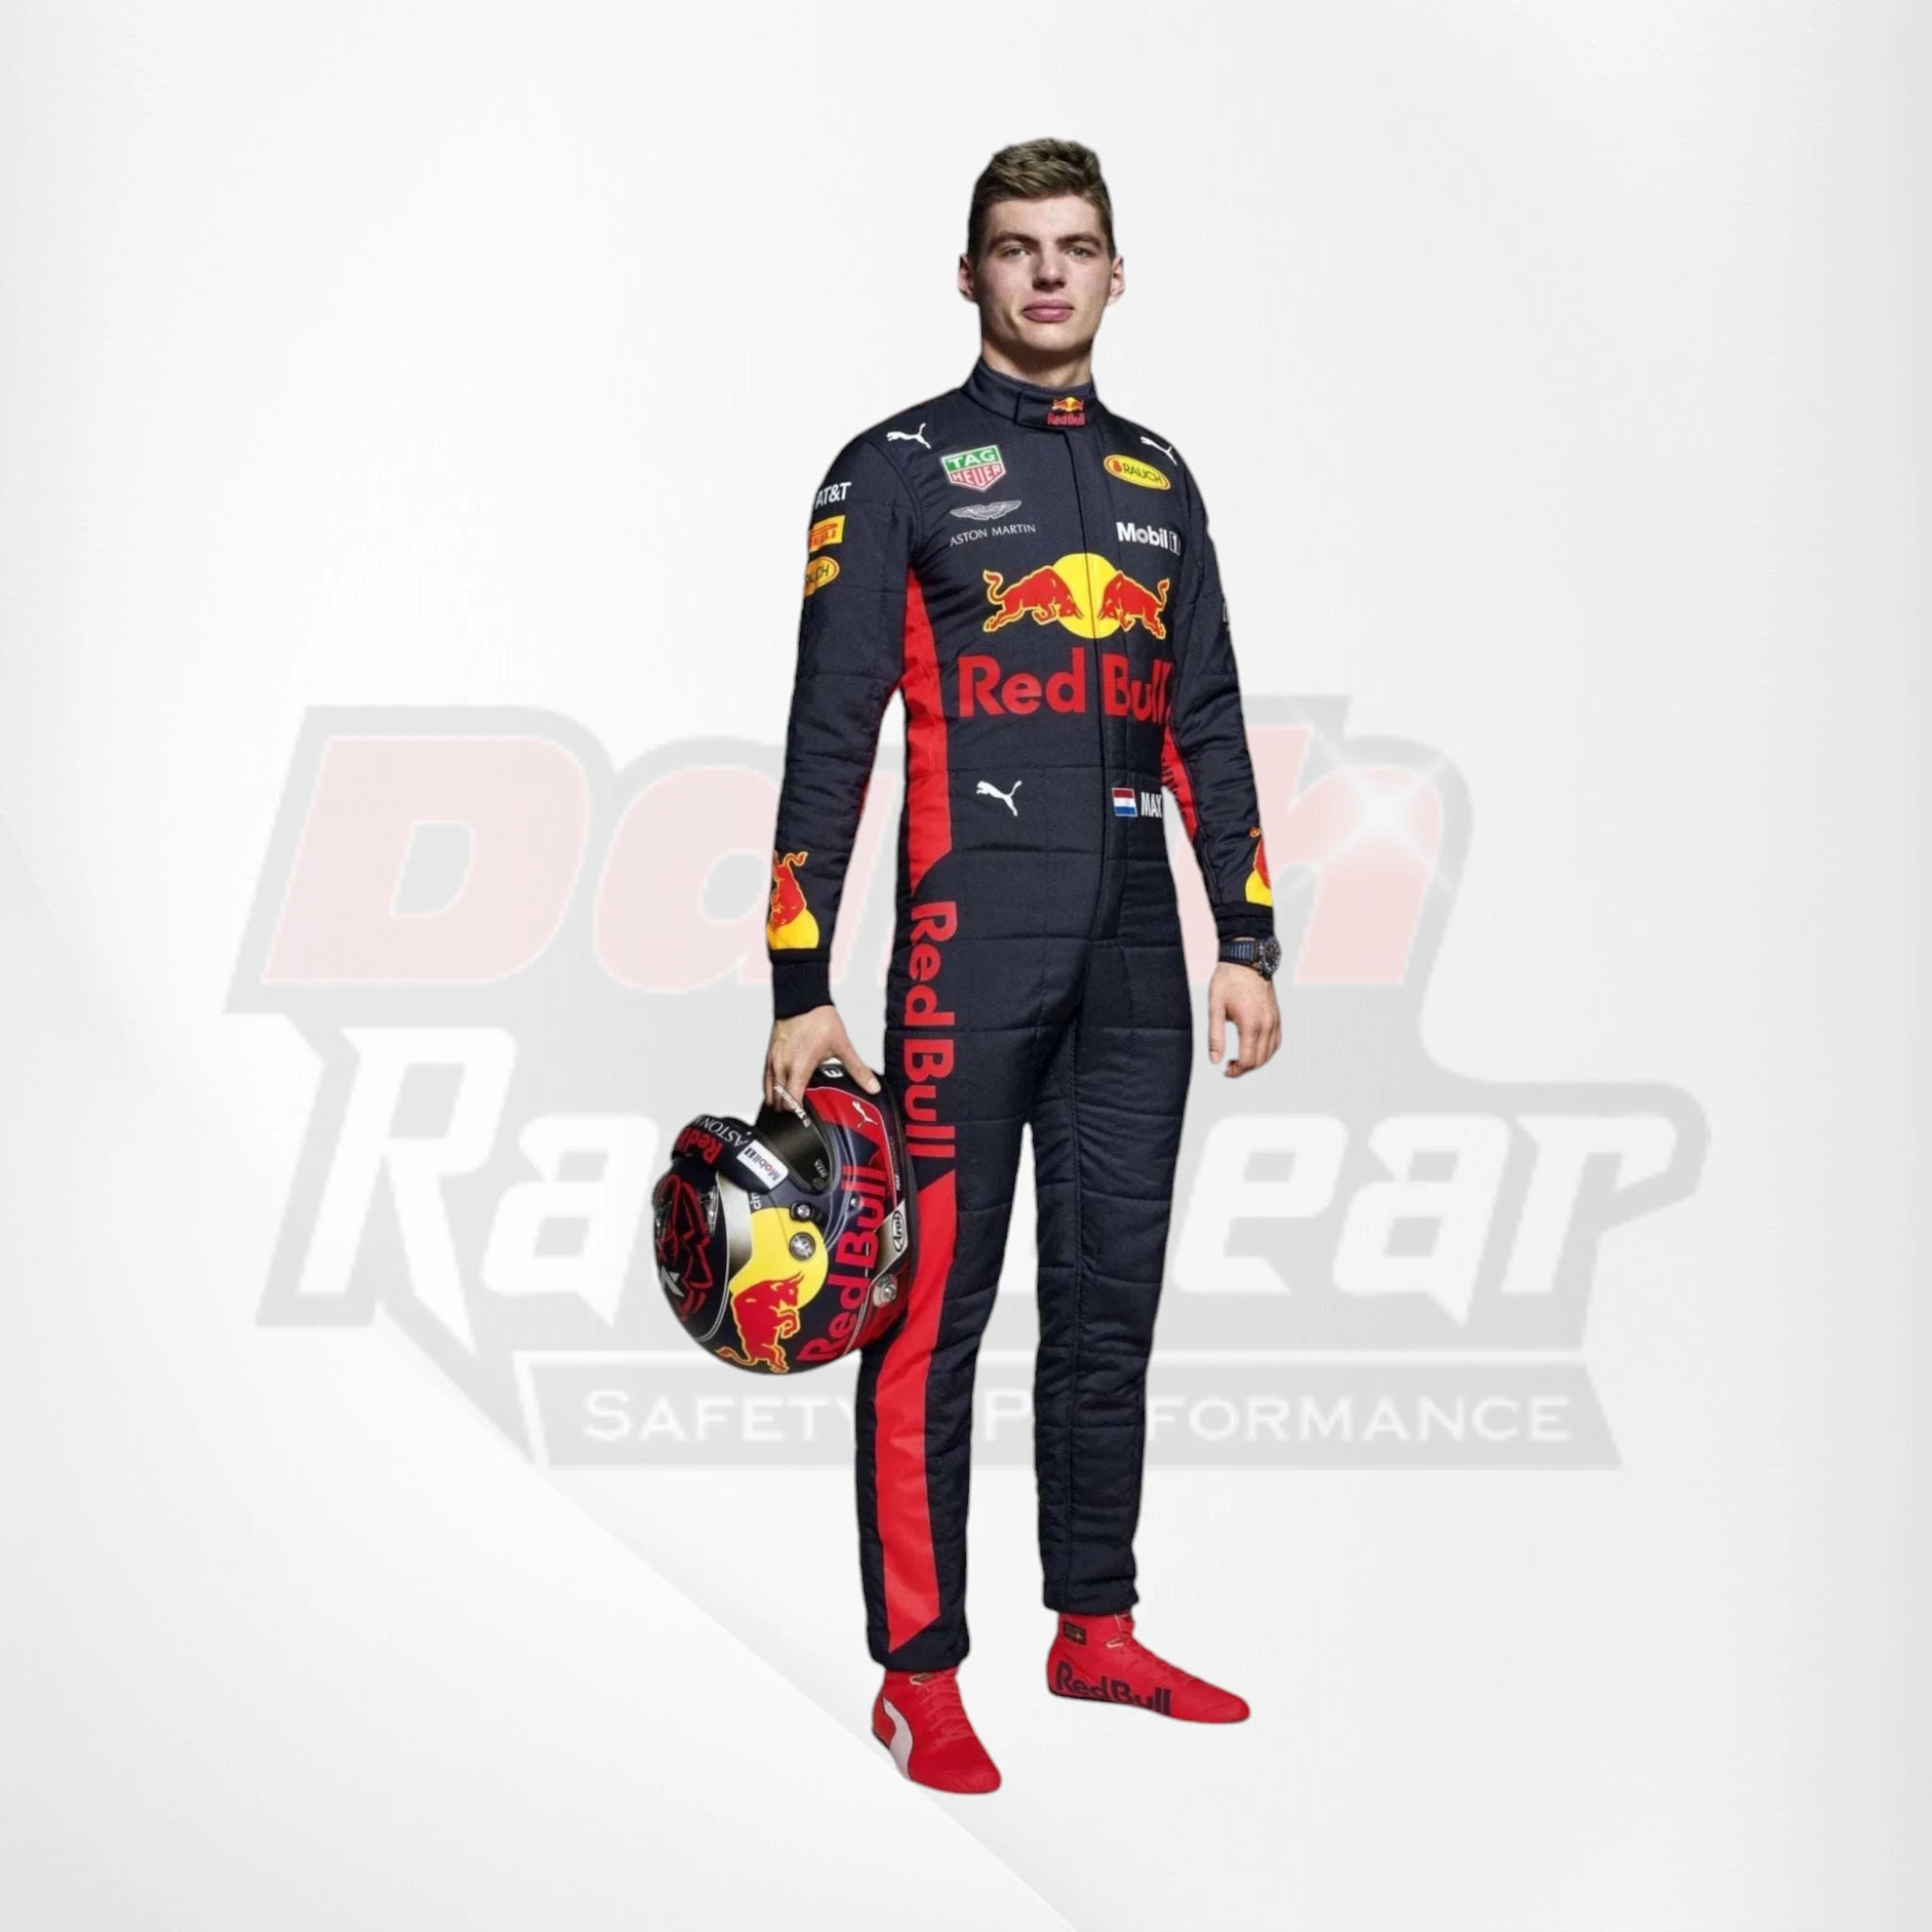 2018 Red Bull Max Verstappen F1 Race Suit